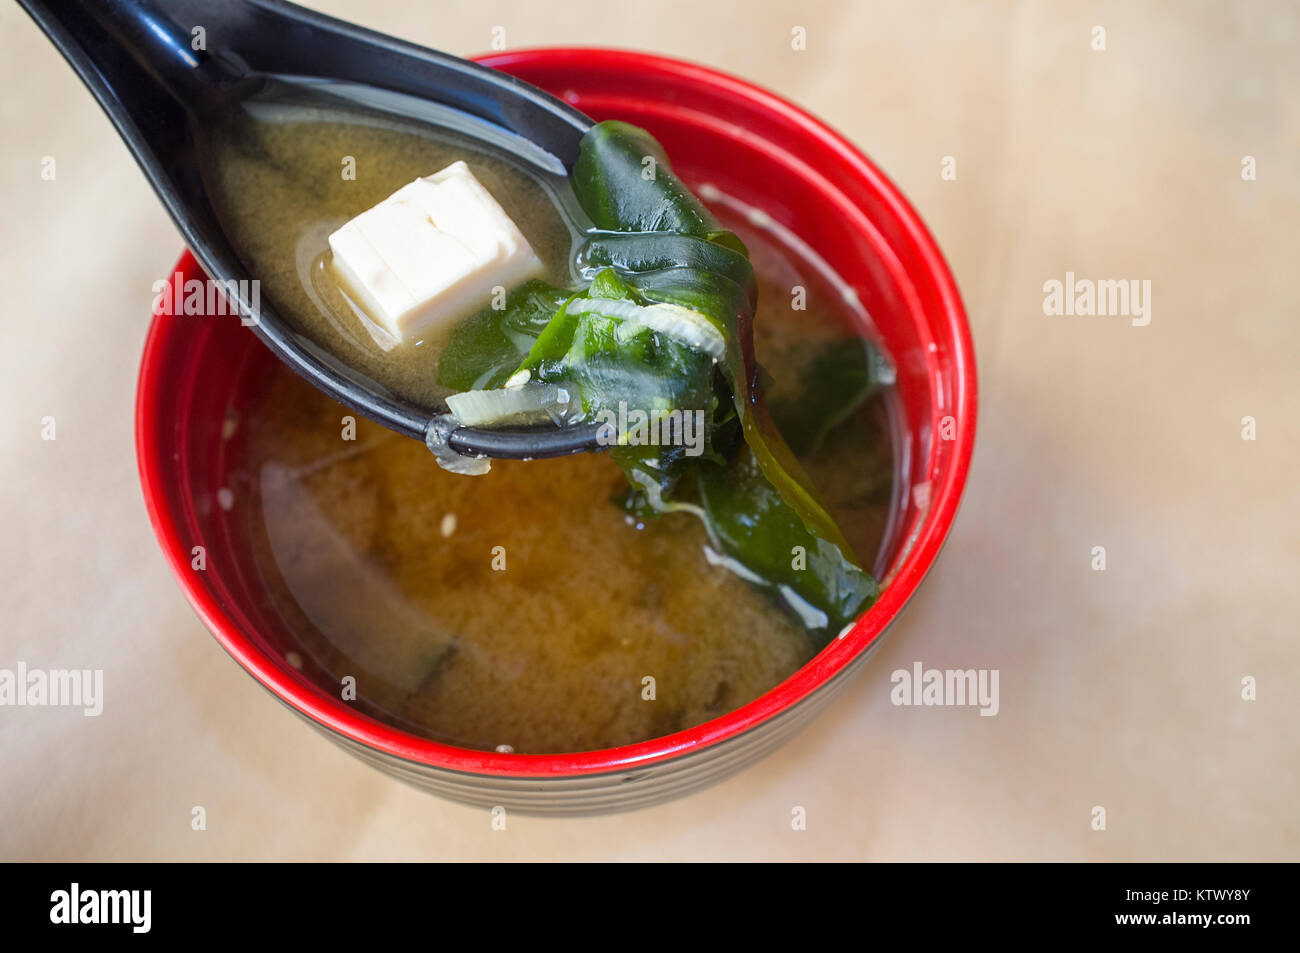 La soupe miso japonaise avec le tofu et les algues. Gros plan avec une cuillerée d'argile morceau de tofu Banque D'Images